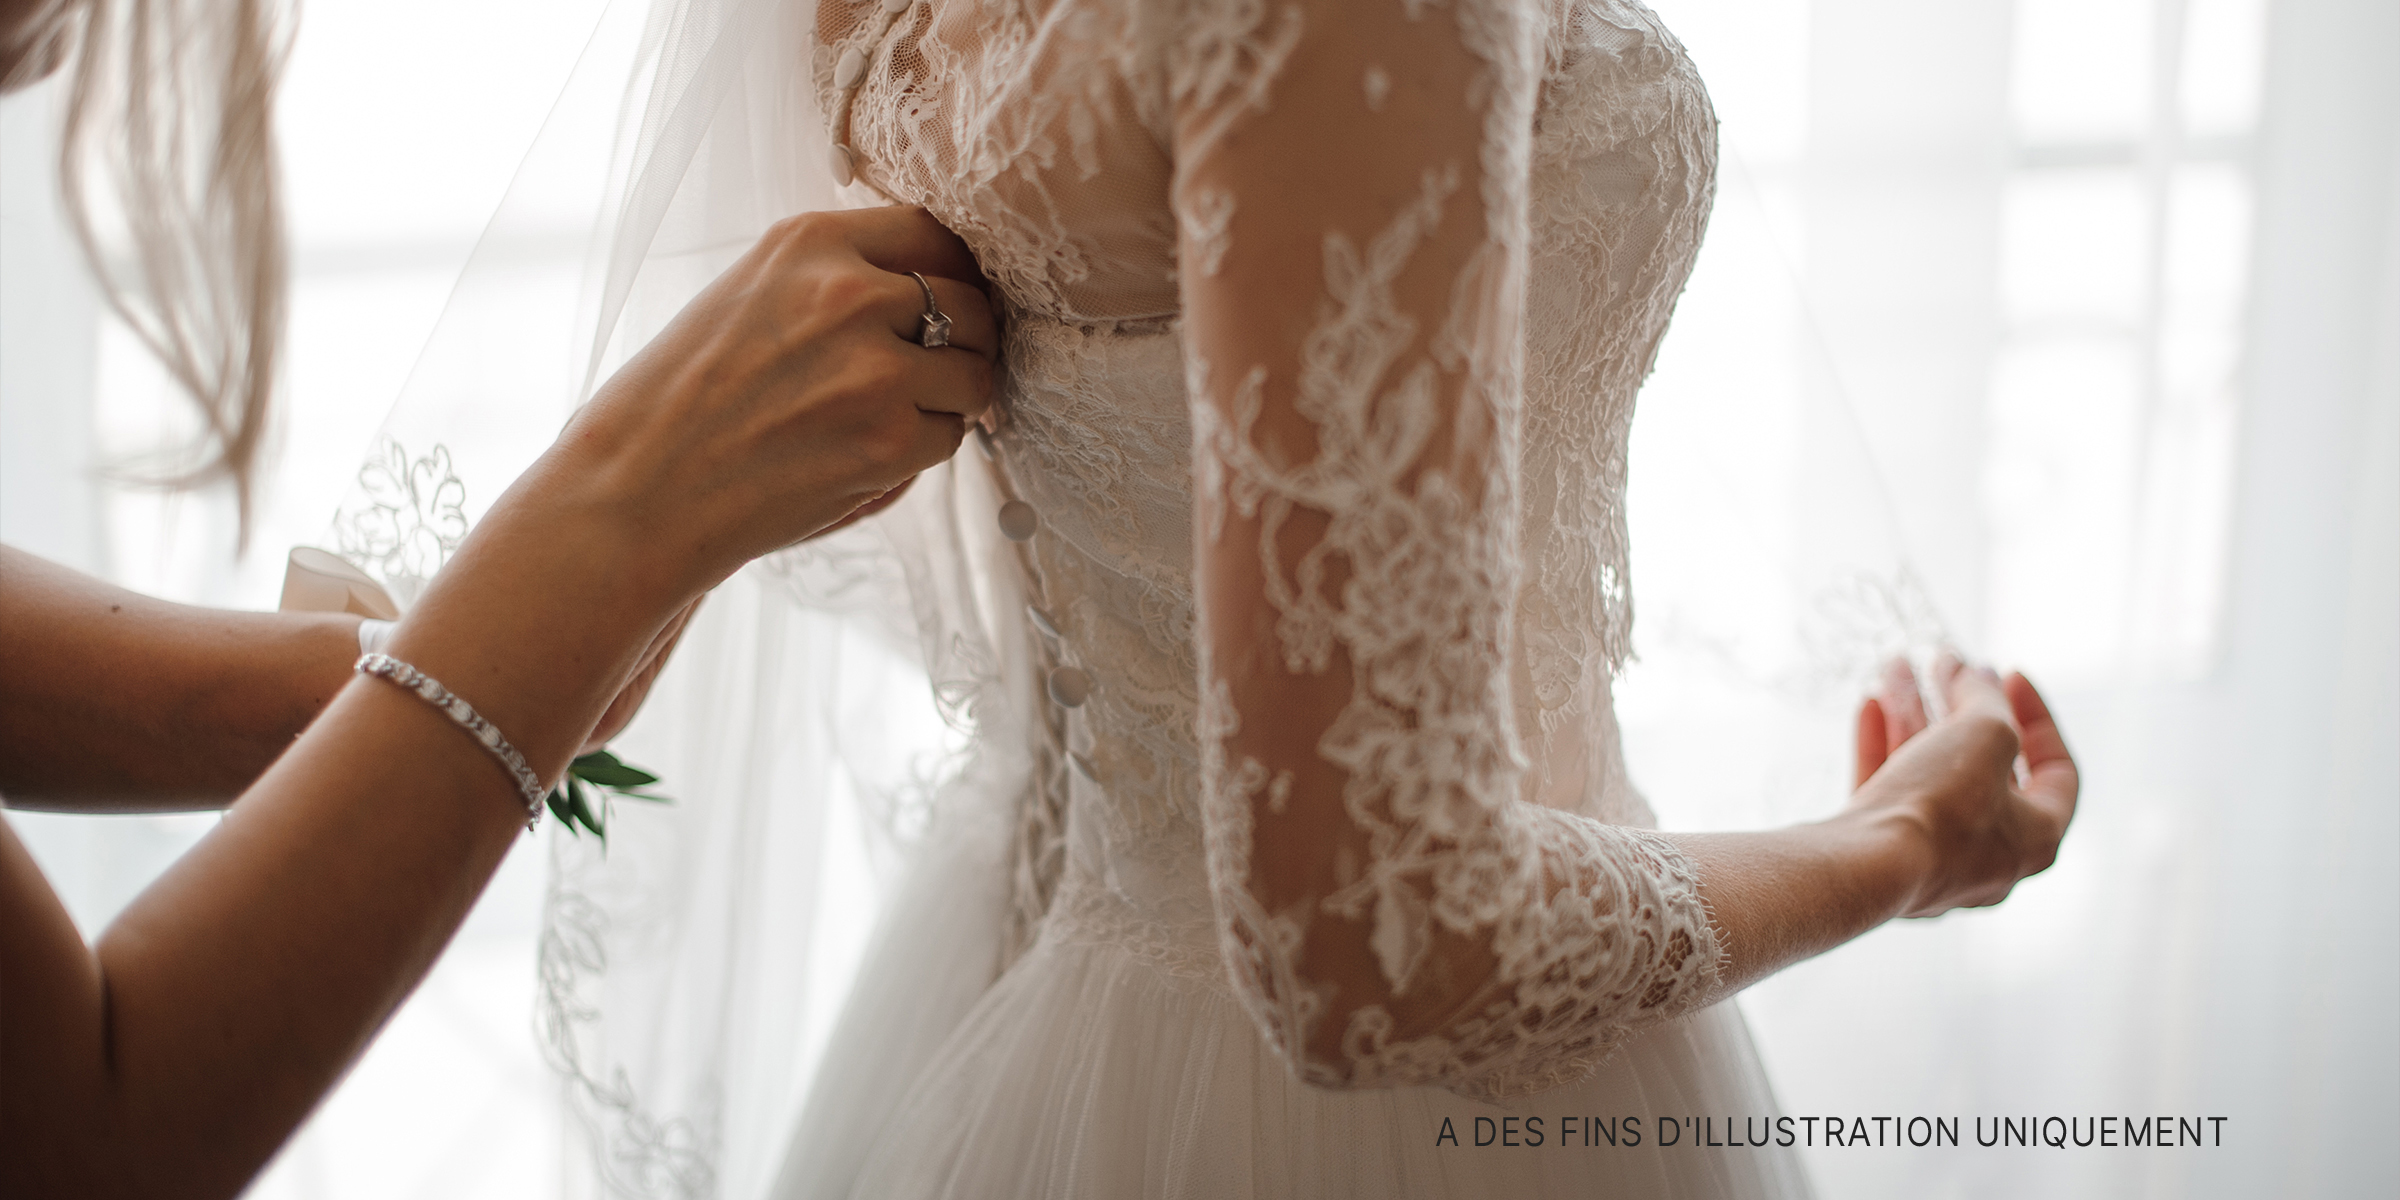 Une femme en robe de mariée | Source : Flickr/brandydopkins